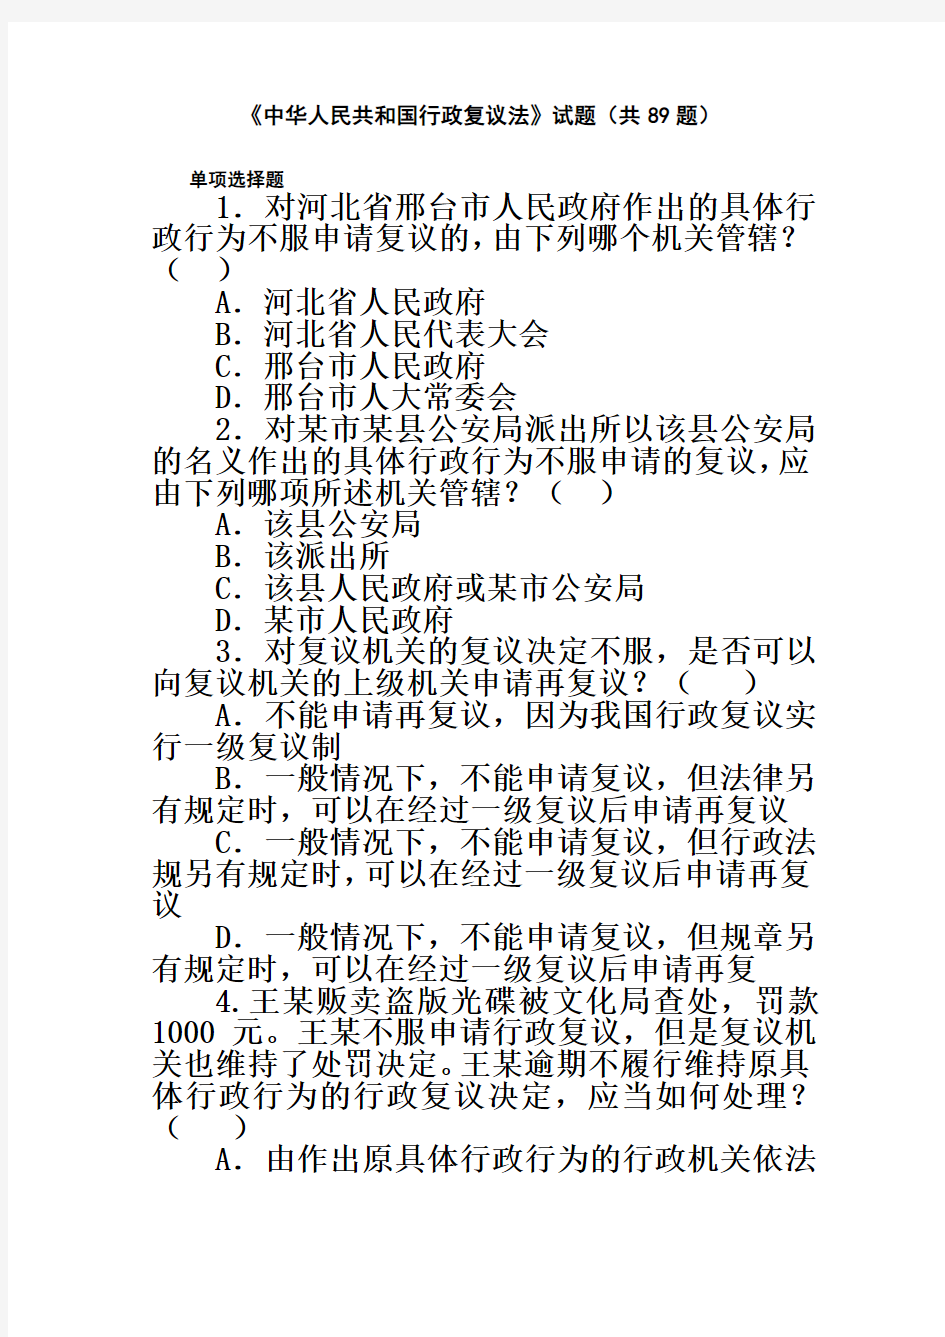 《中华人民共和国行政复议法》试题(共89题)